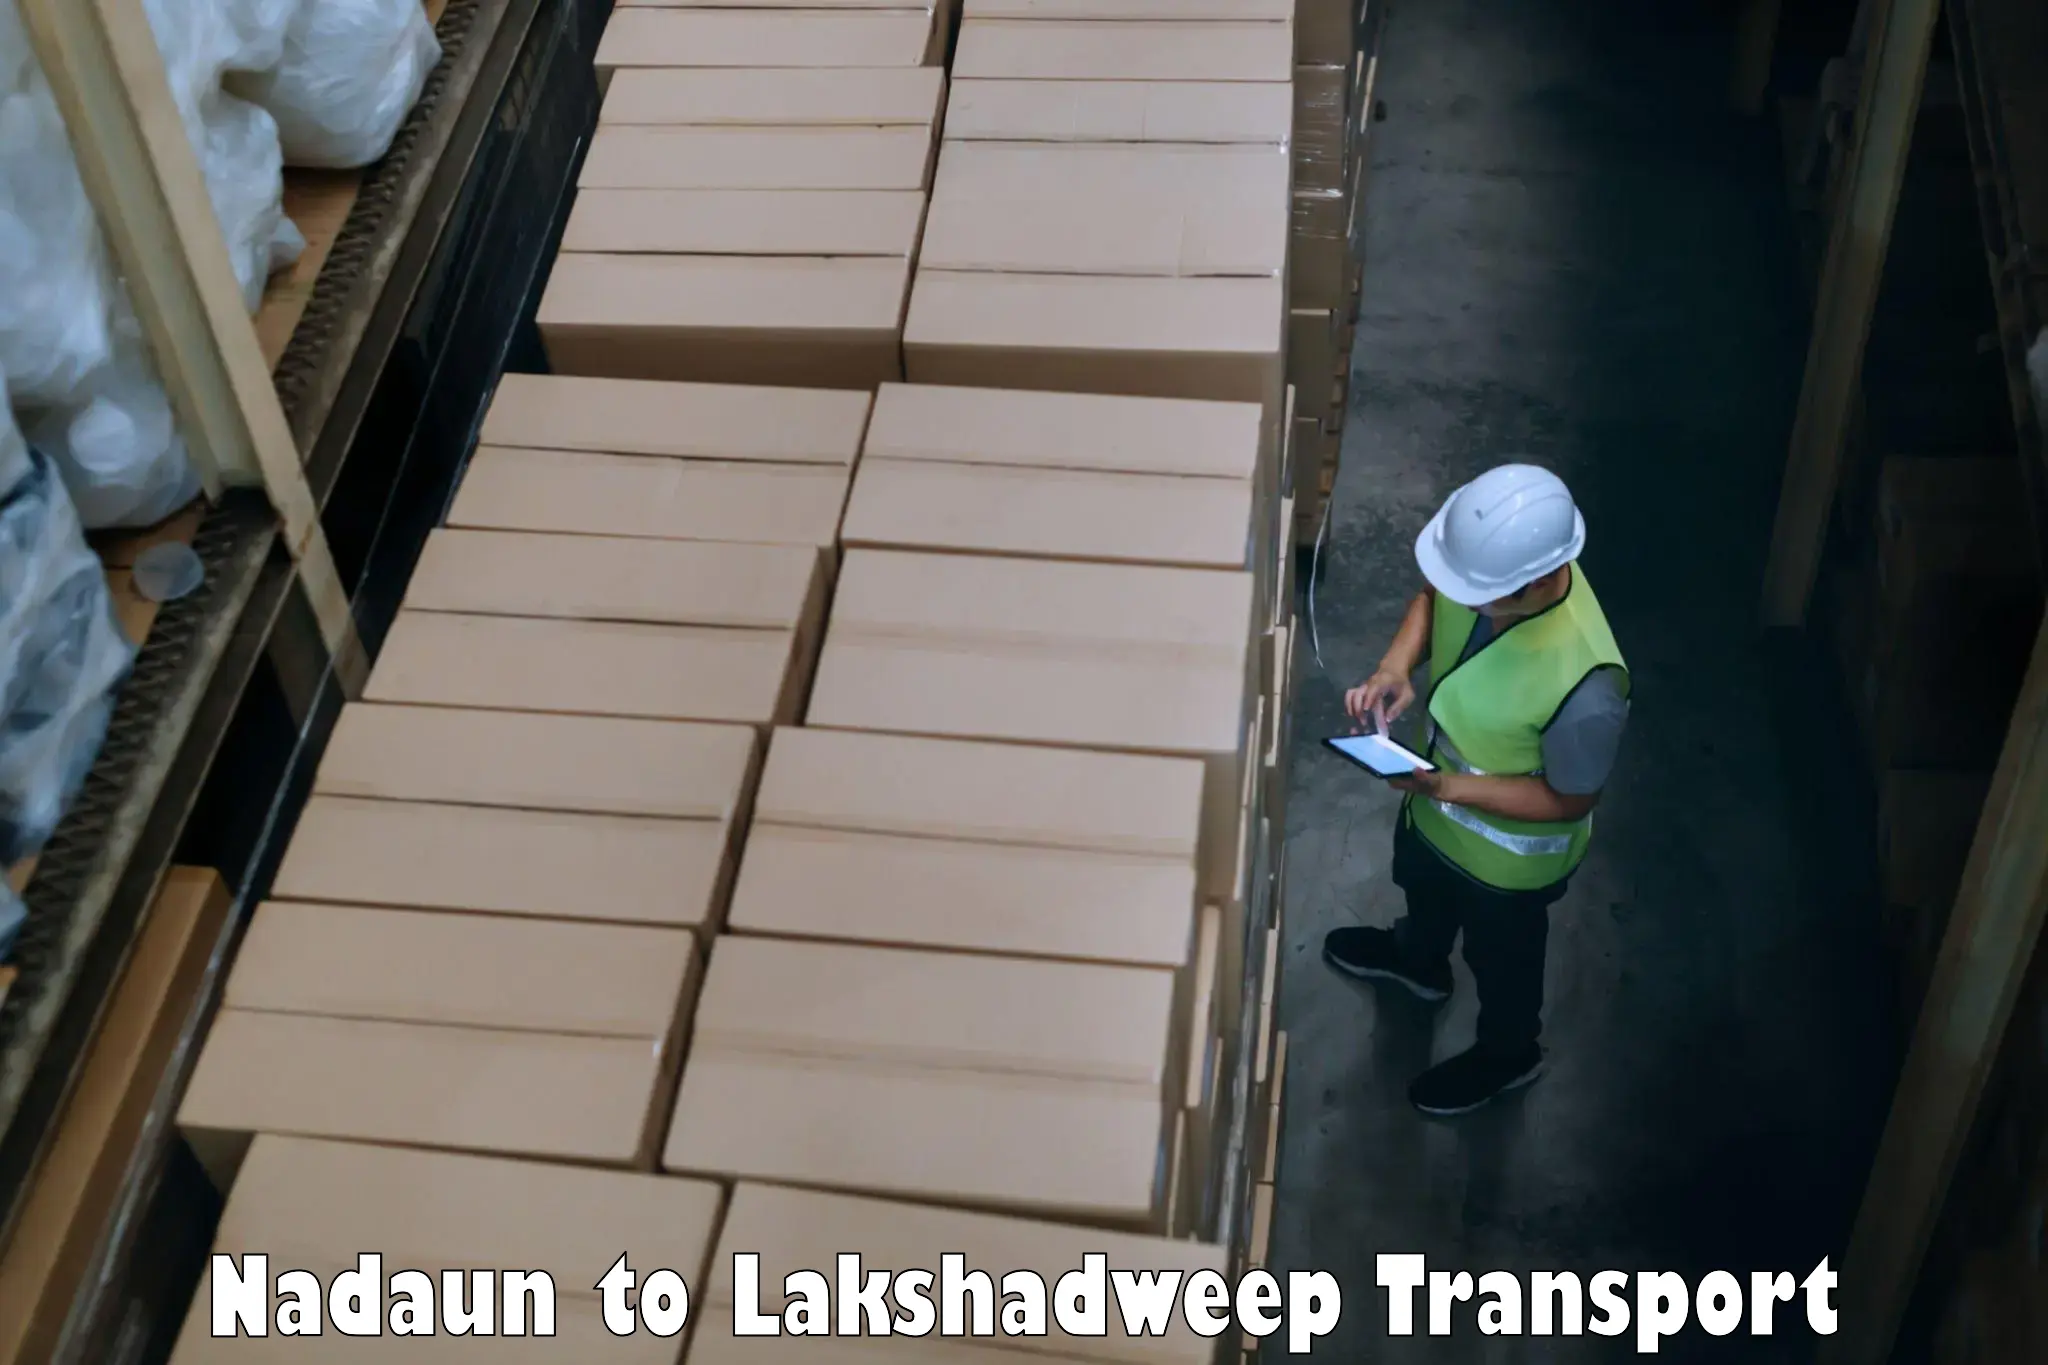 Luggage transport services Nadaun to Lakshadweep